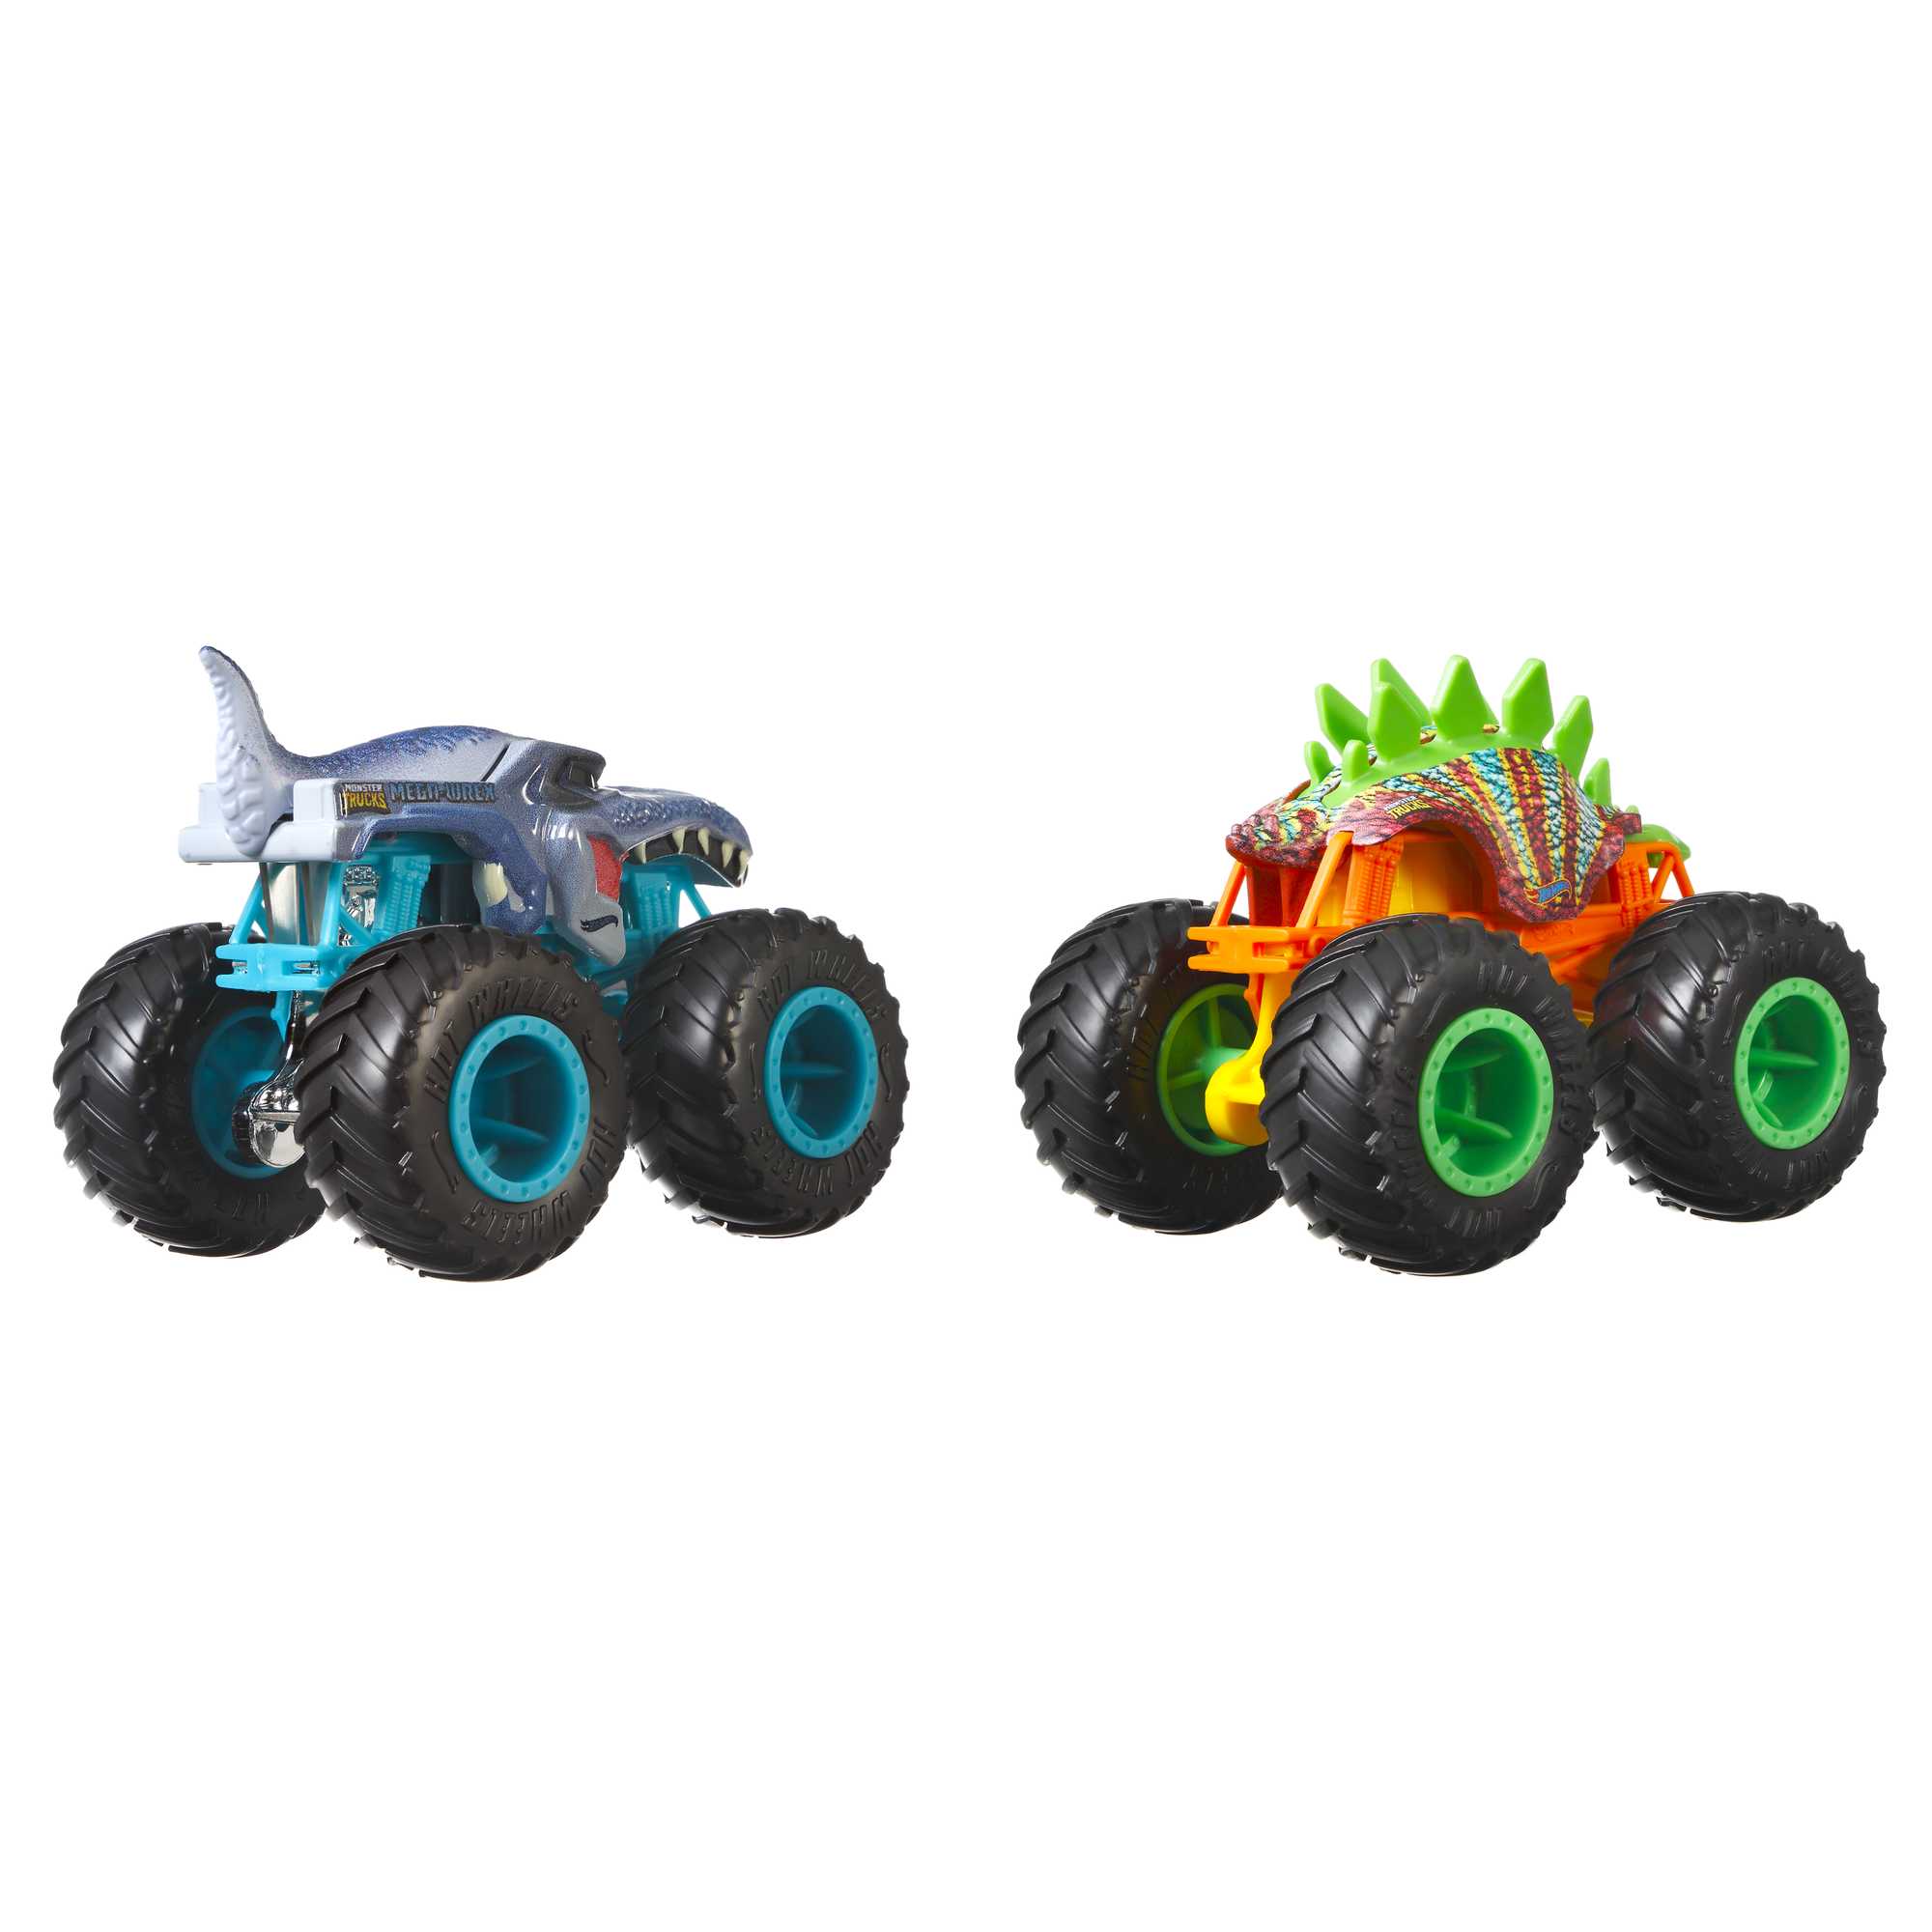 Carro Hot Wheels Mattel Monster Truck